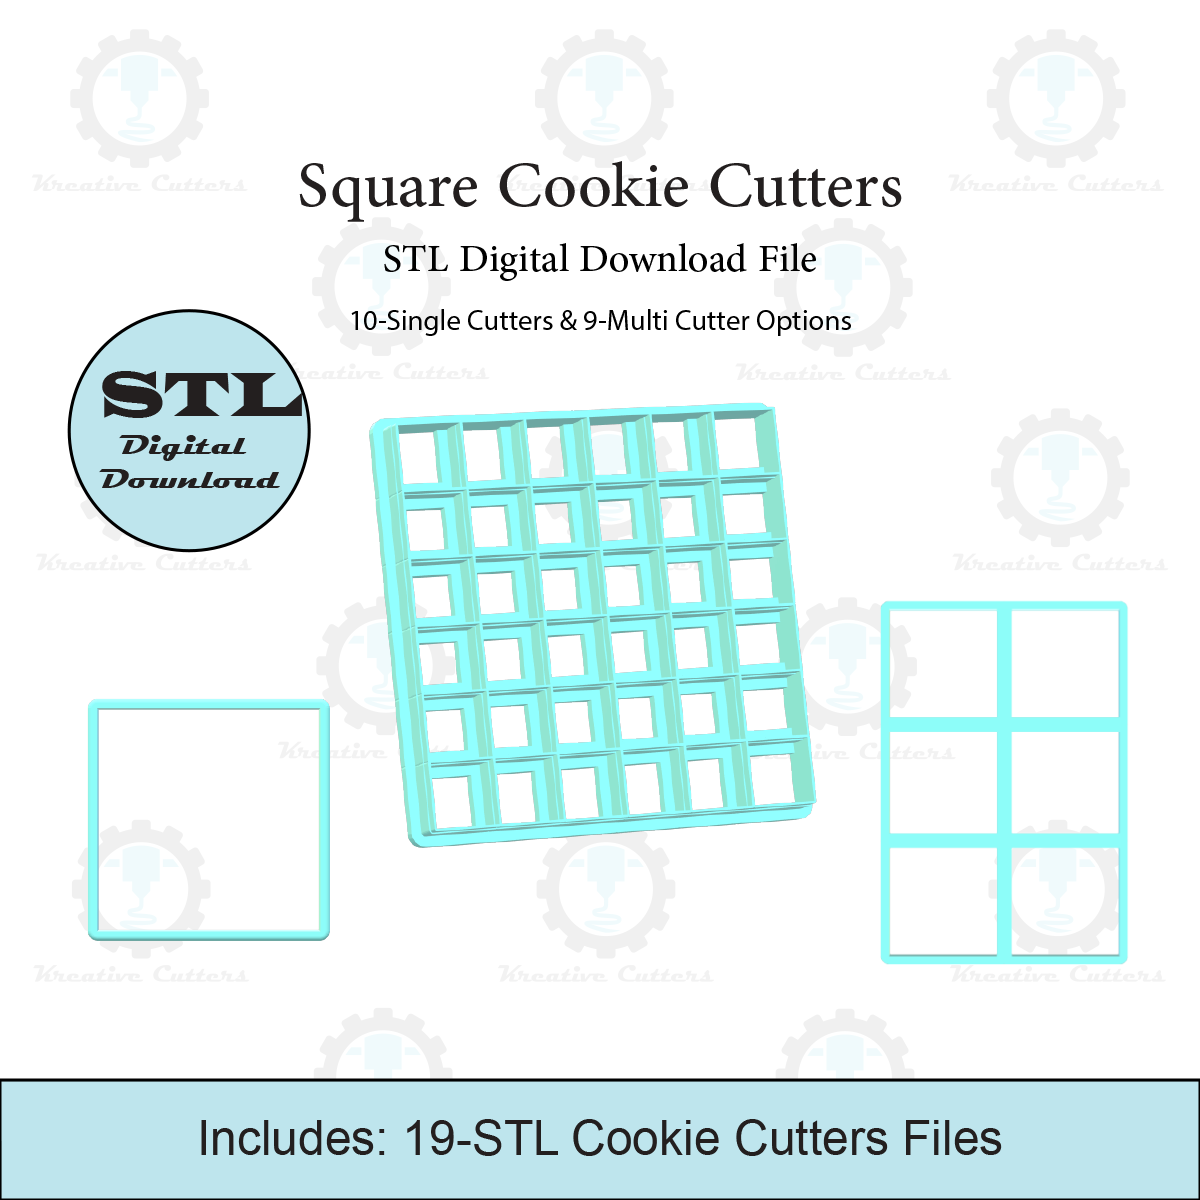 Square Cookie Cutters | 10-Single Cutters & 9-Multi Cutter Options | STL File